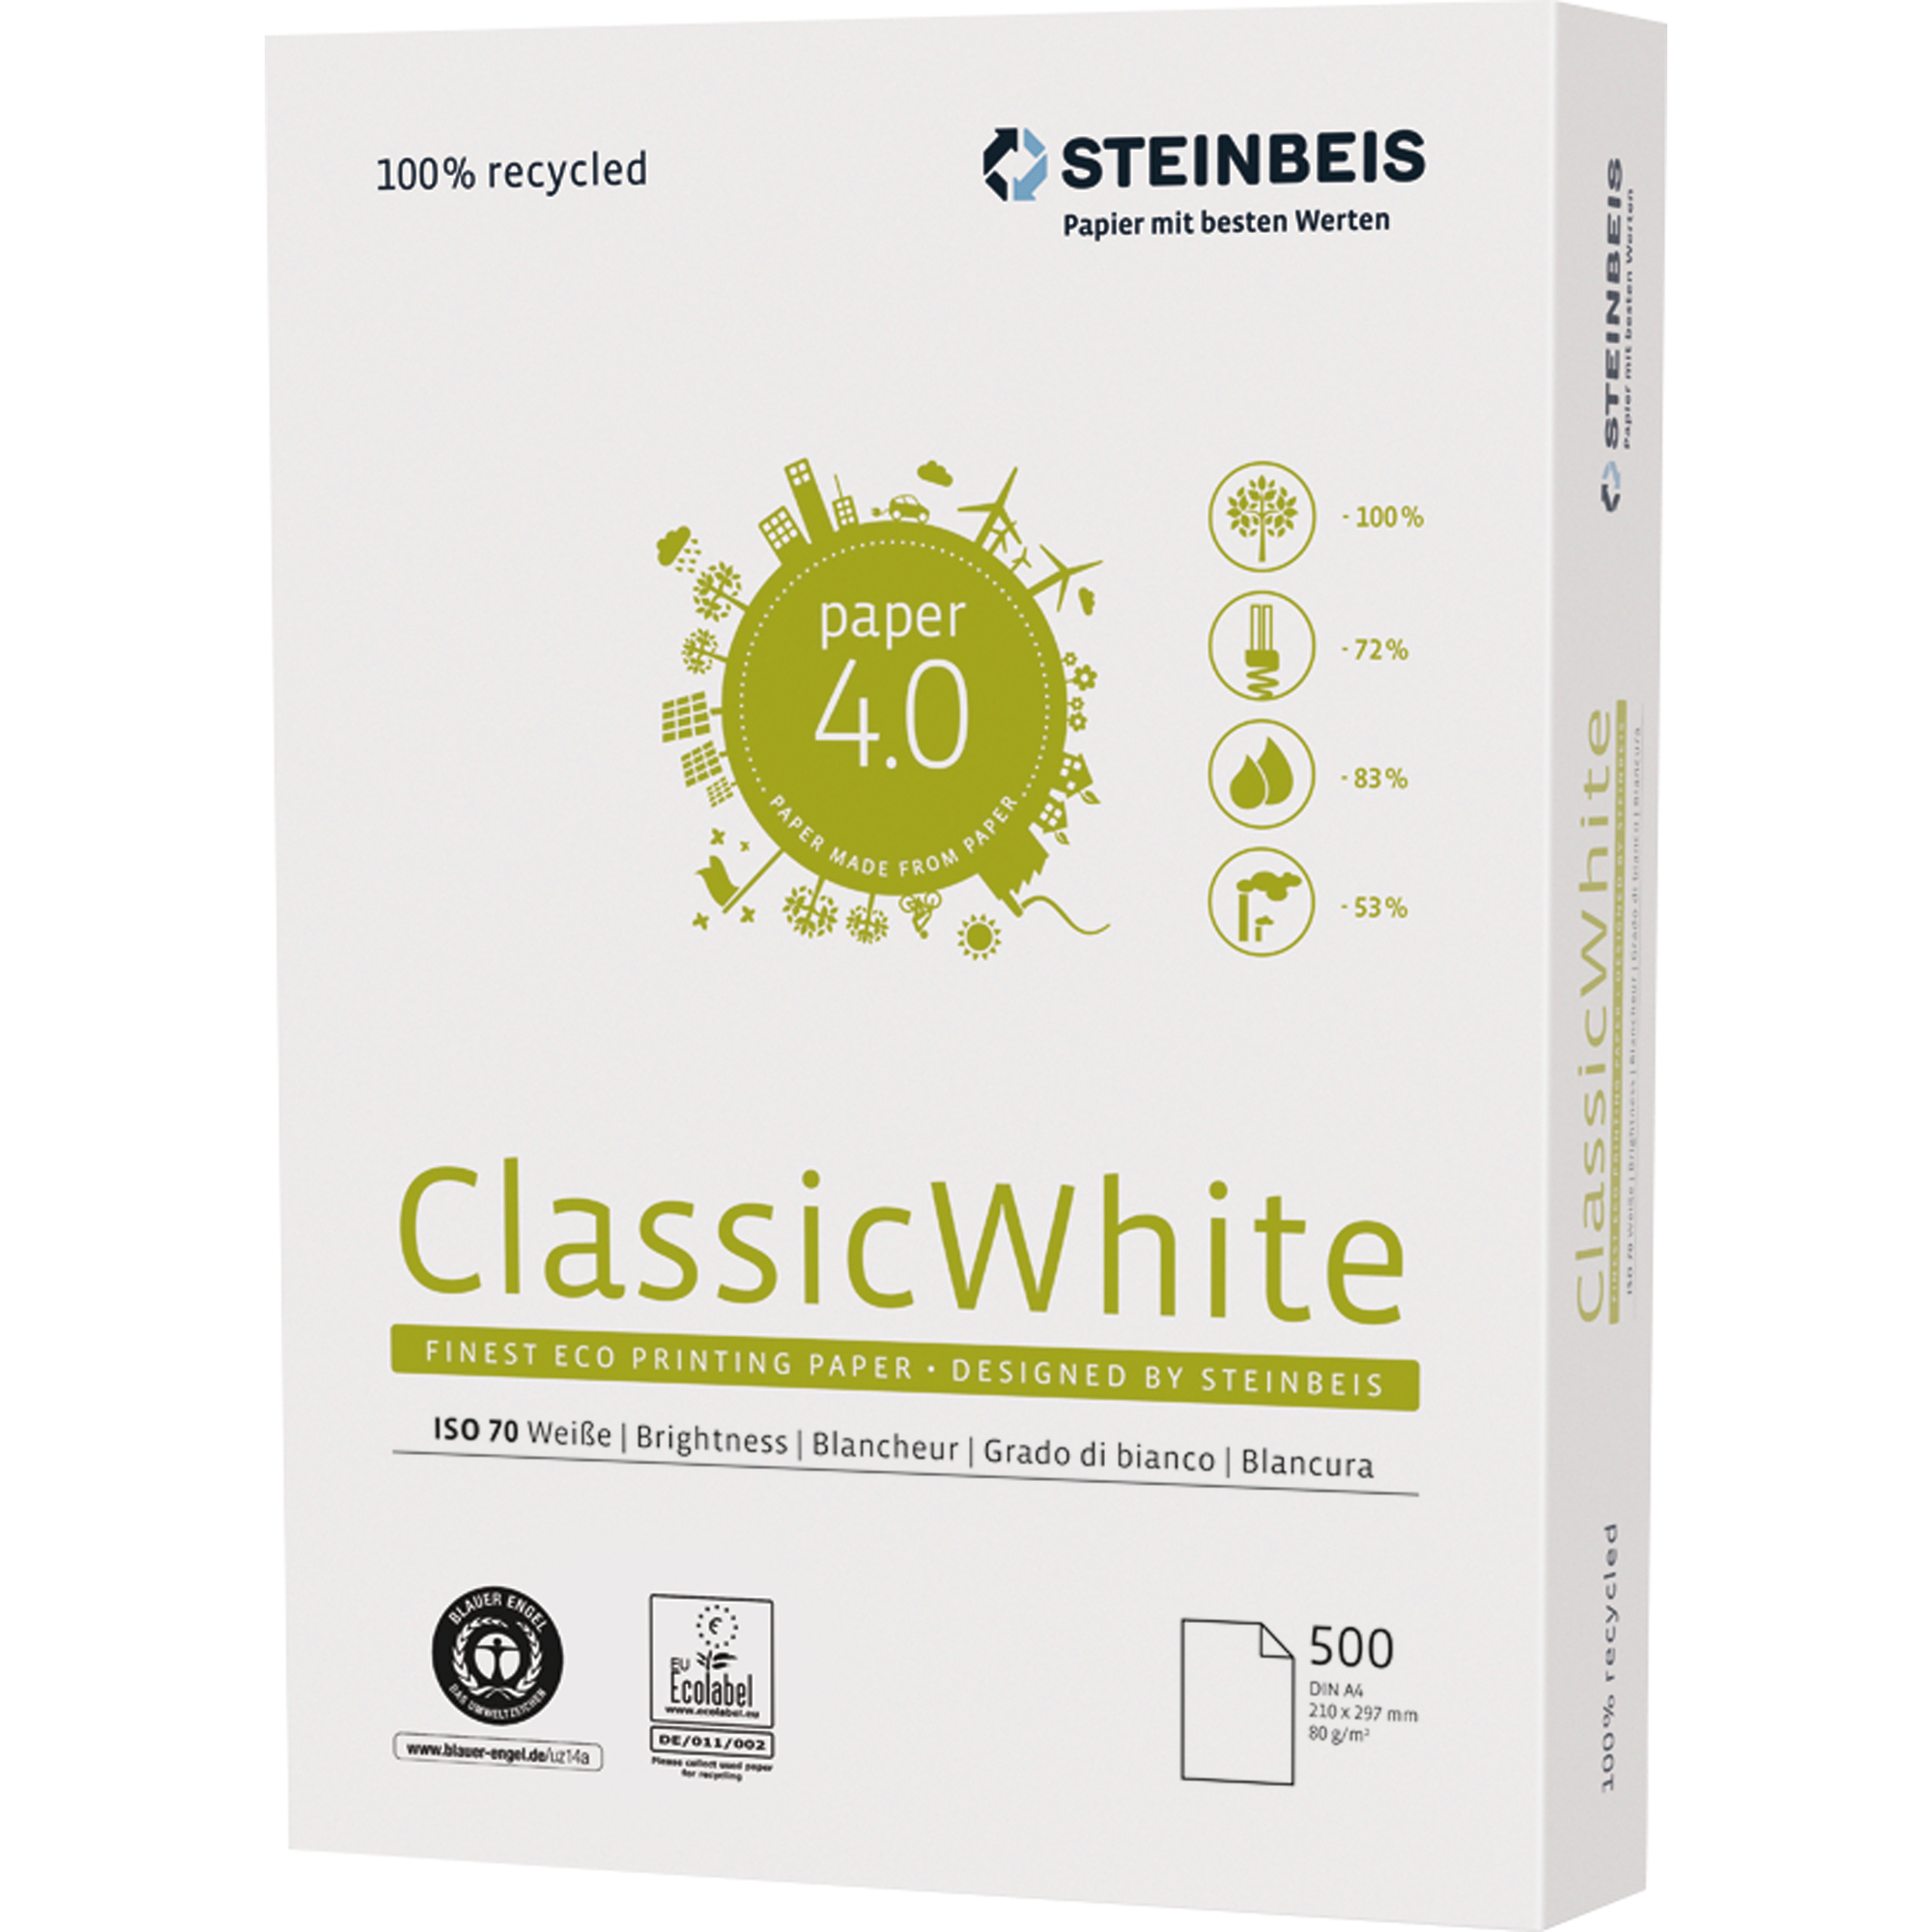 STEINBEIS Kopierpapier ClassicWhite Kopierpapier Recycling 500 Bl./Pack. 1 Packung A4